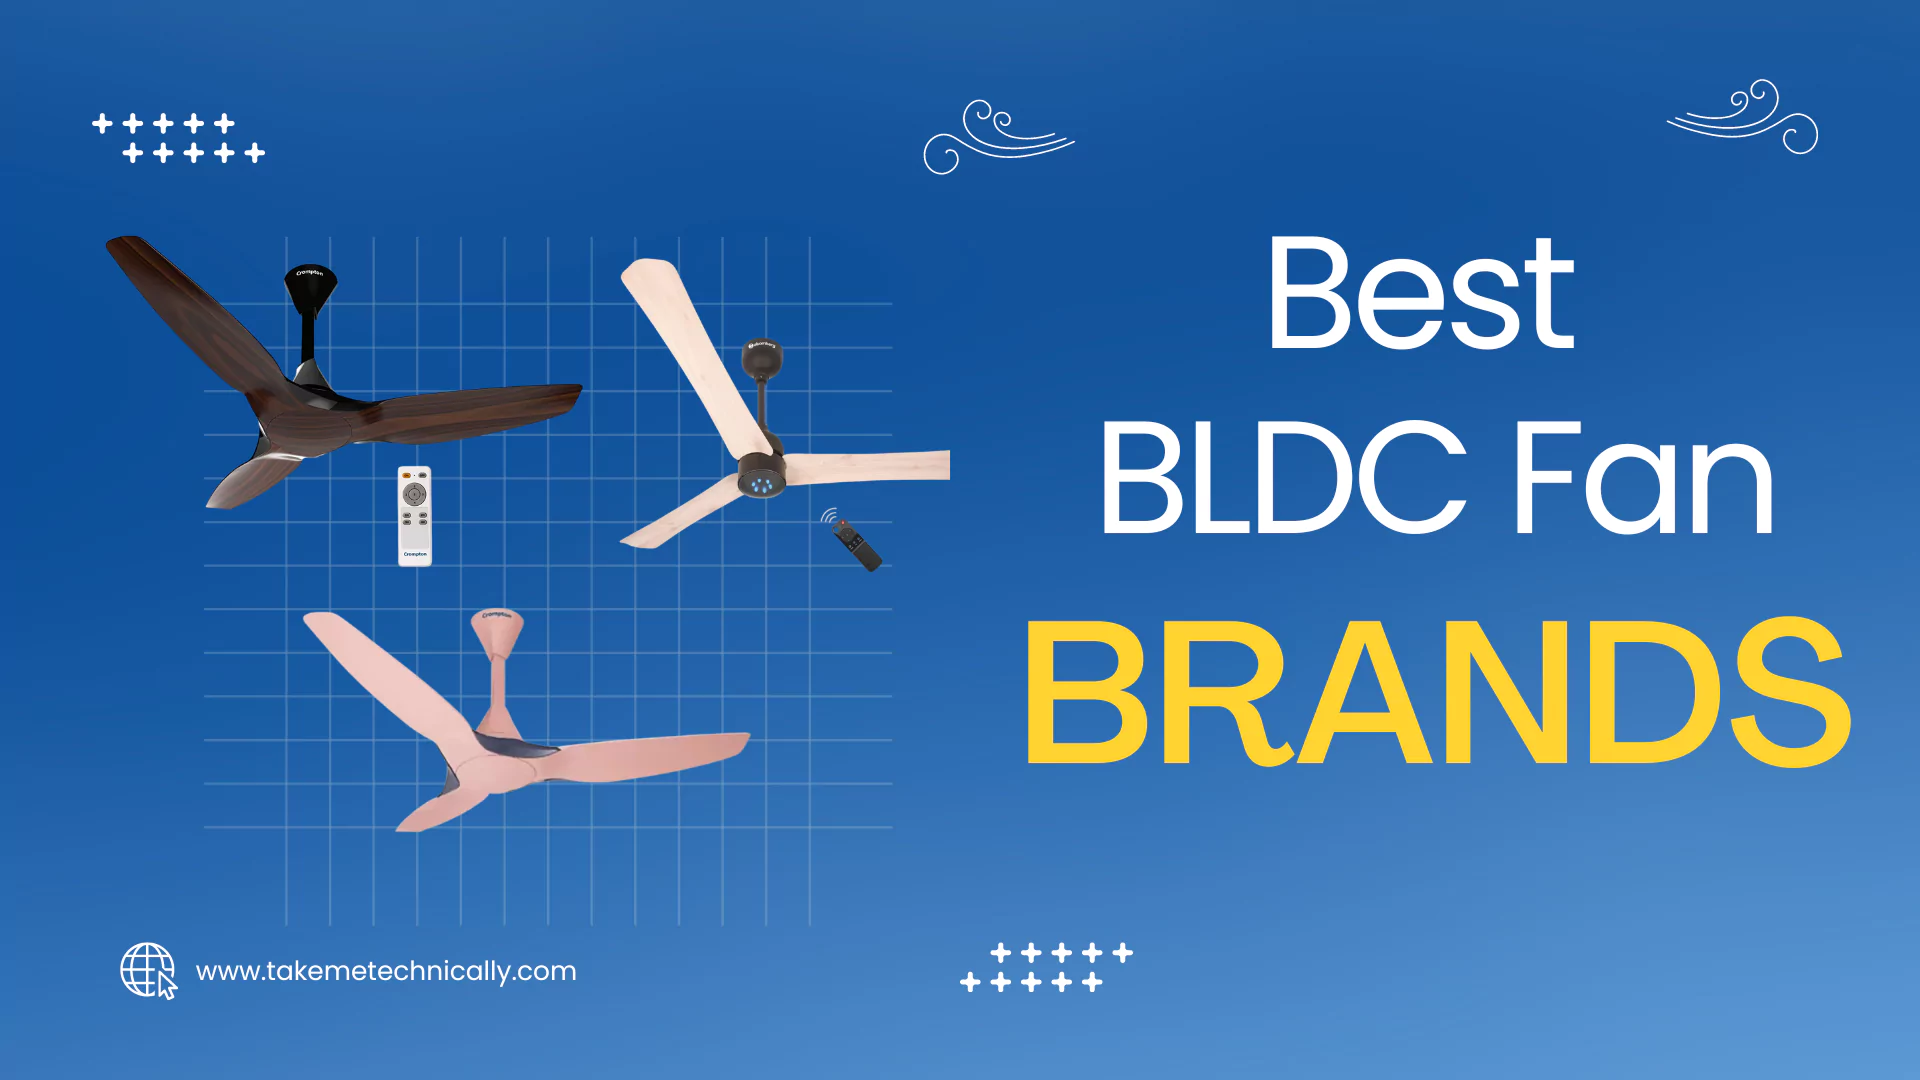 Best BLDC Fan Brands